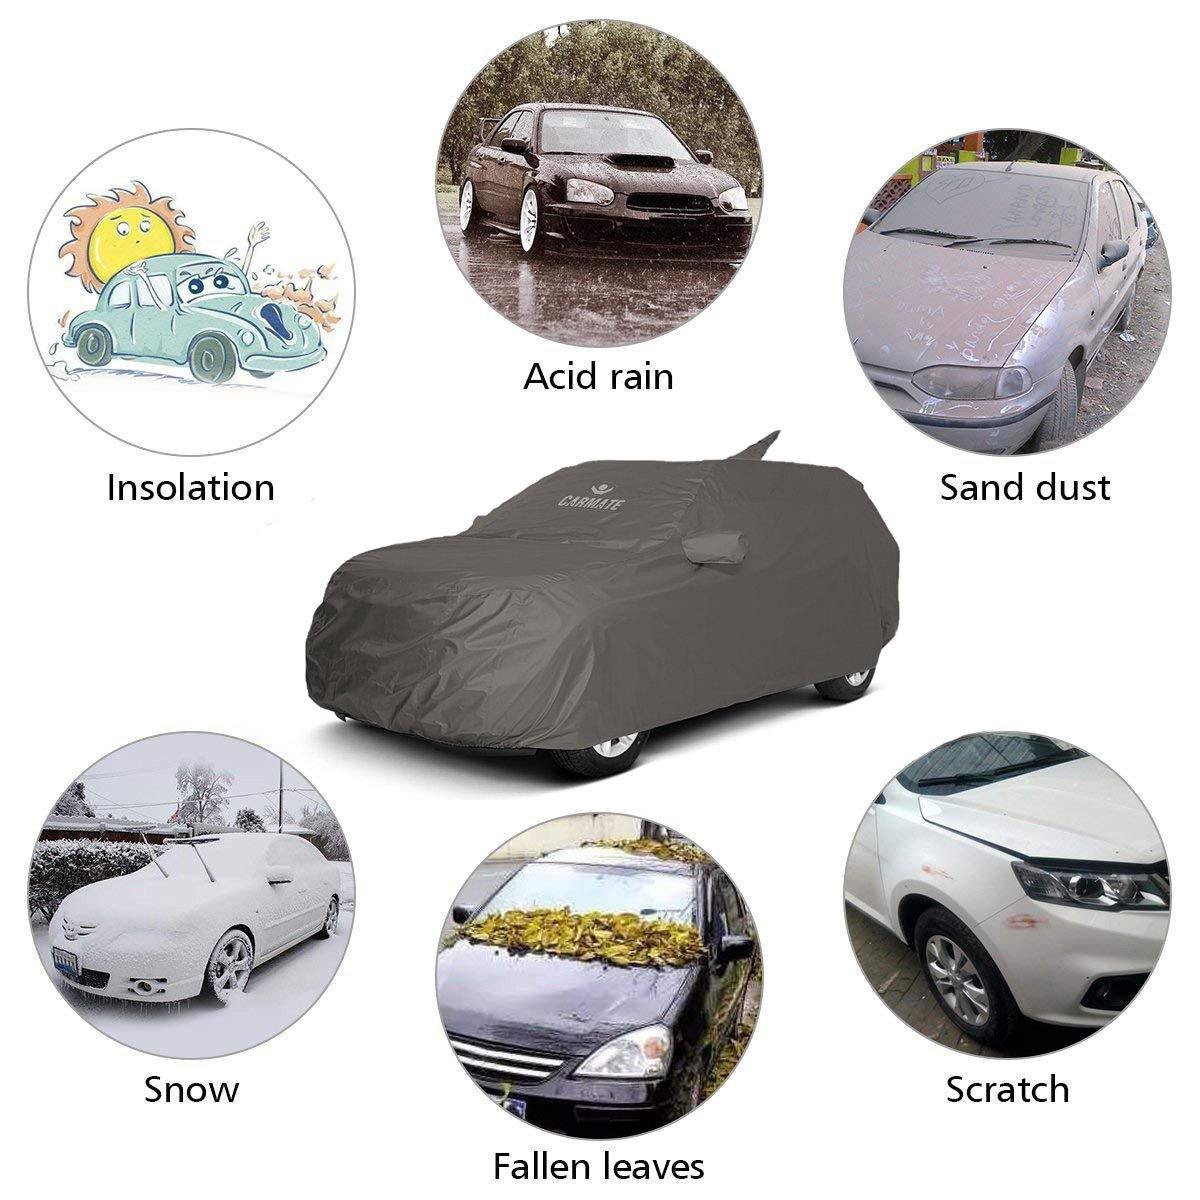 Carmate Car Body Cover 100% Waterproof Pride (Grey) for Honda - Accord 2012 - CARMATE®